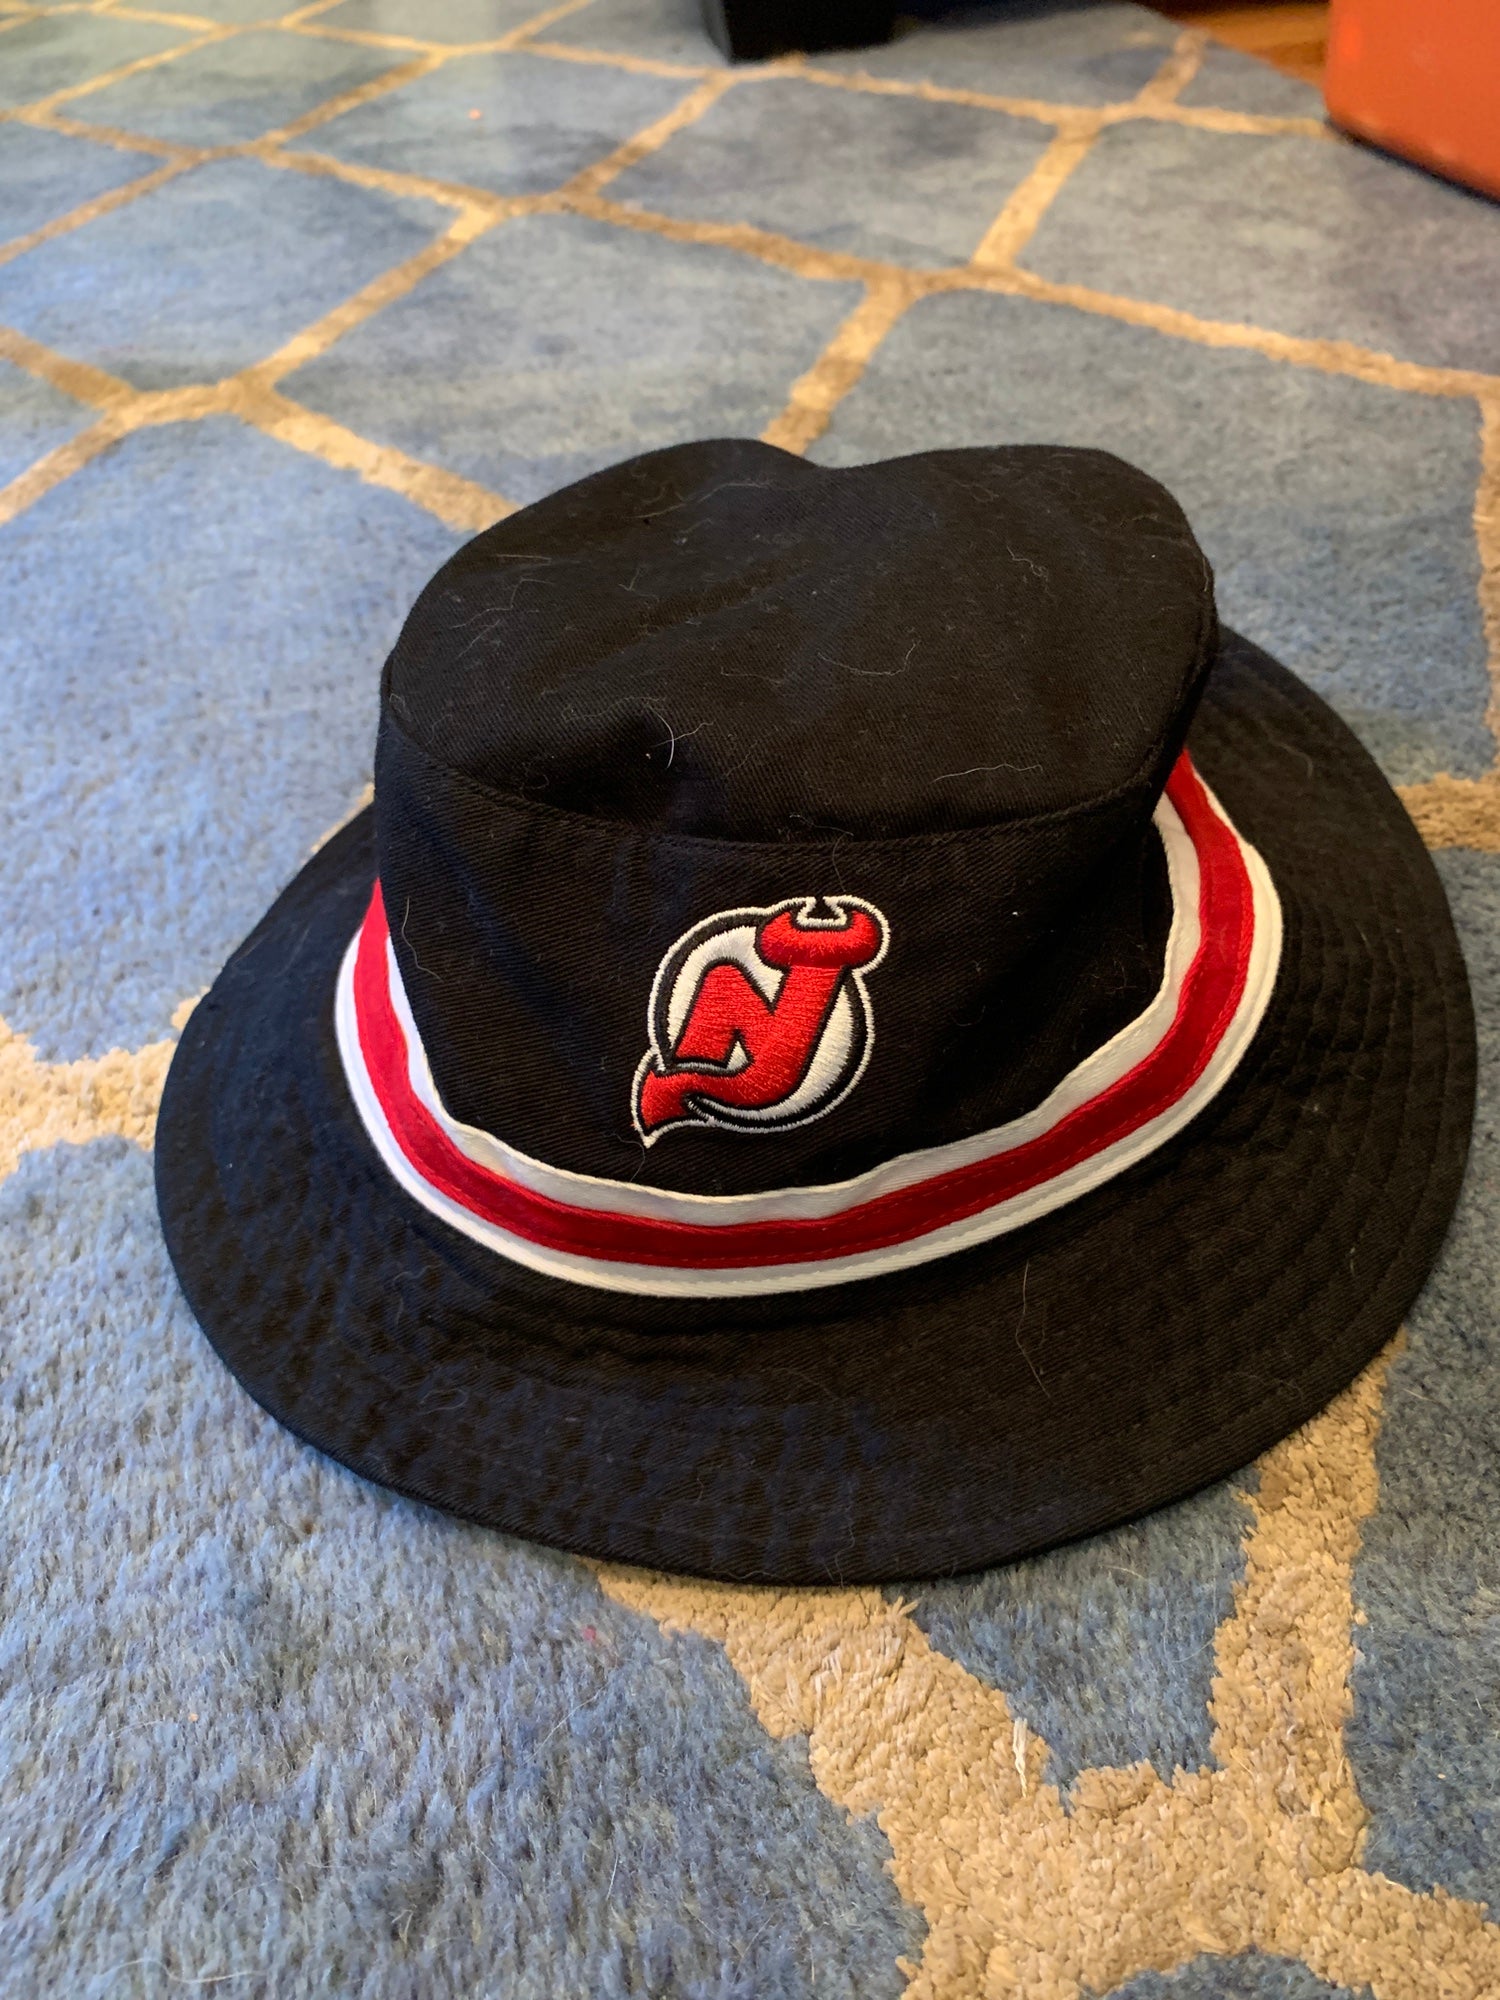 New Jersey Devils Sports Fan Cap, Hats for sale